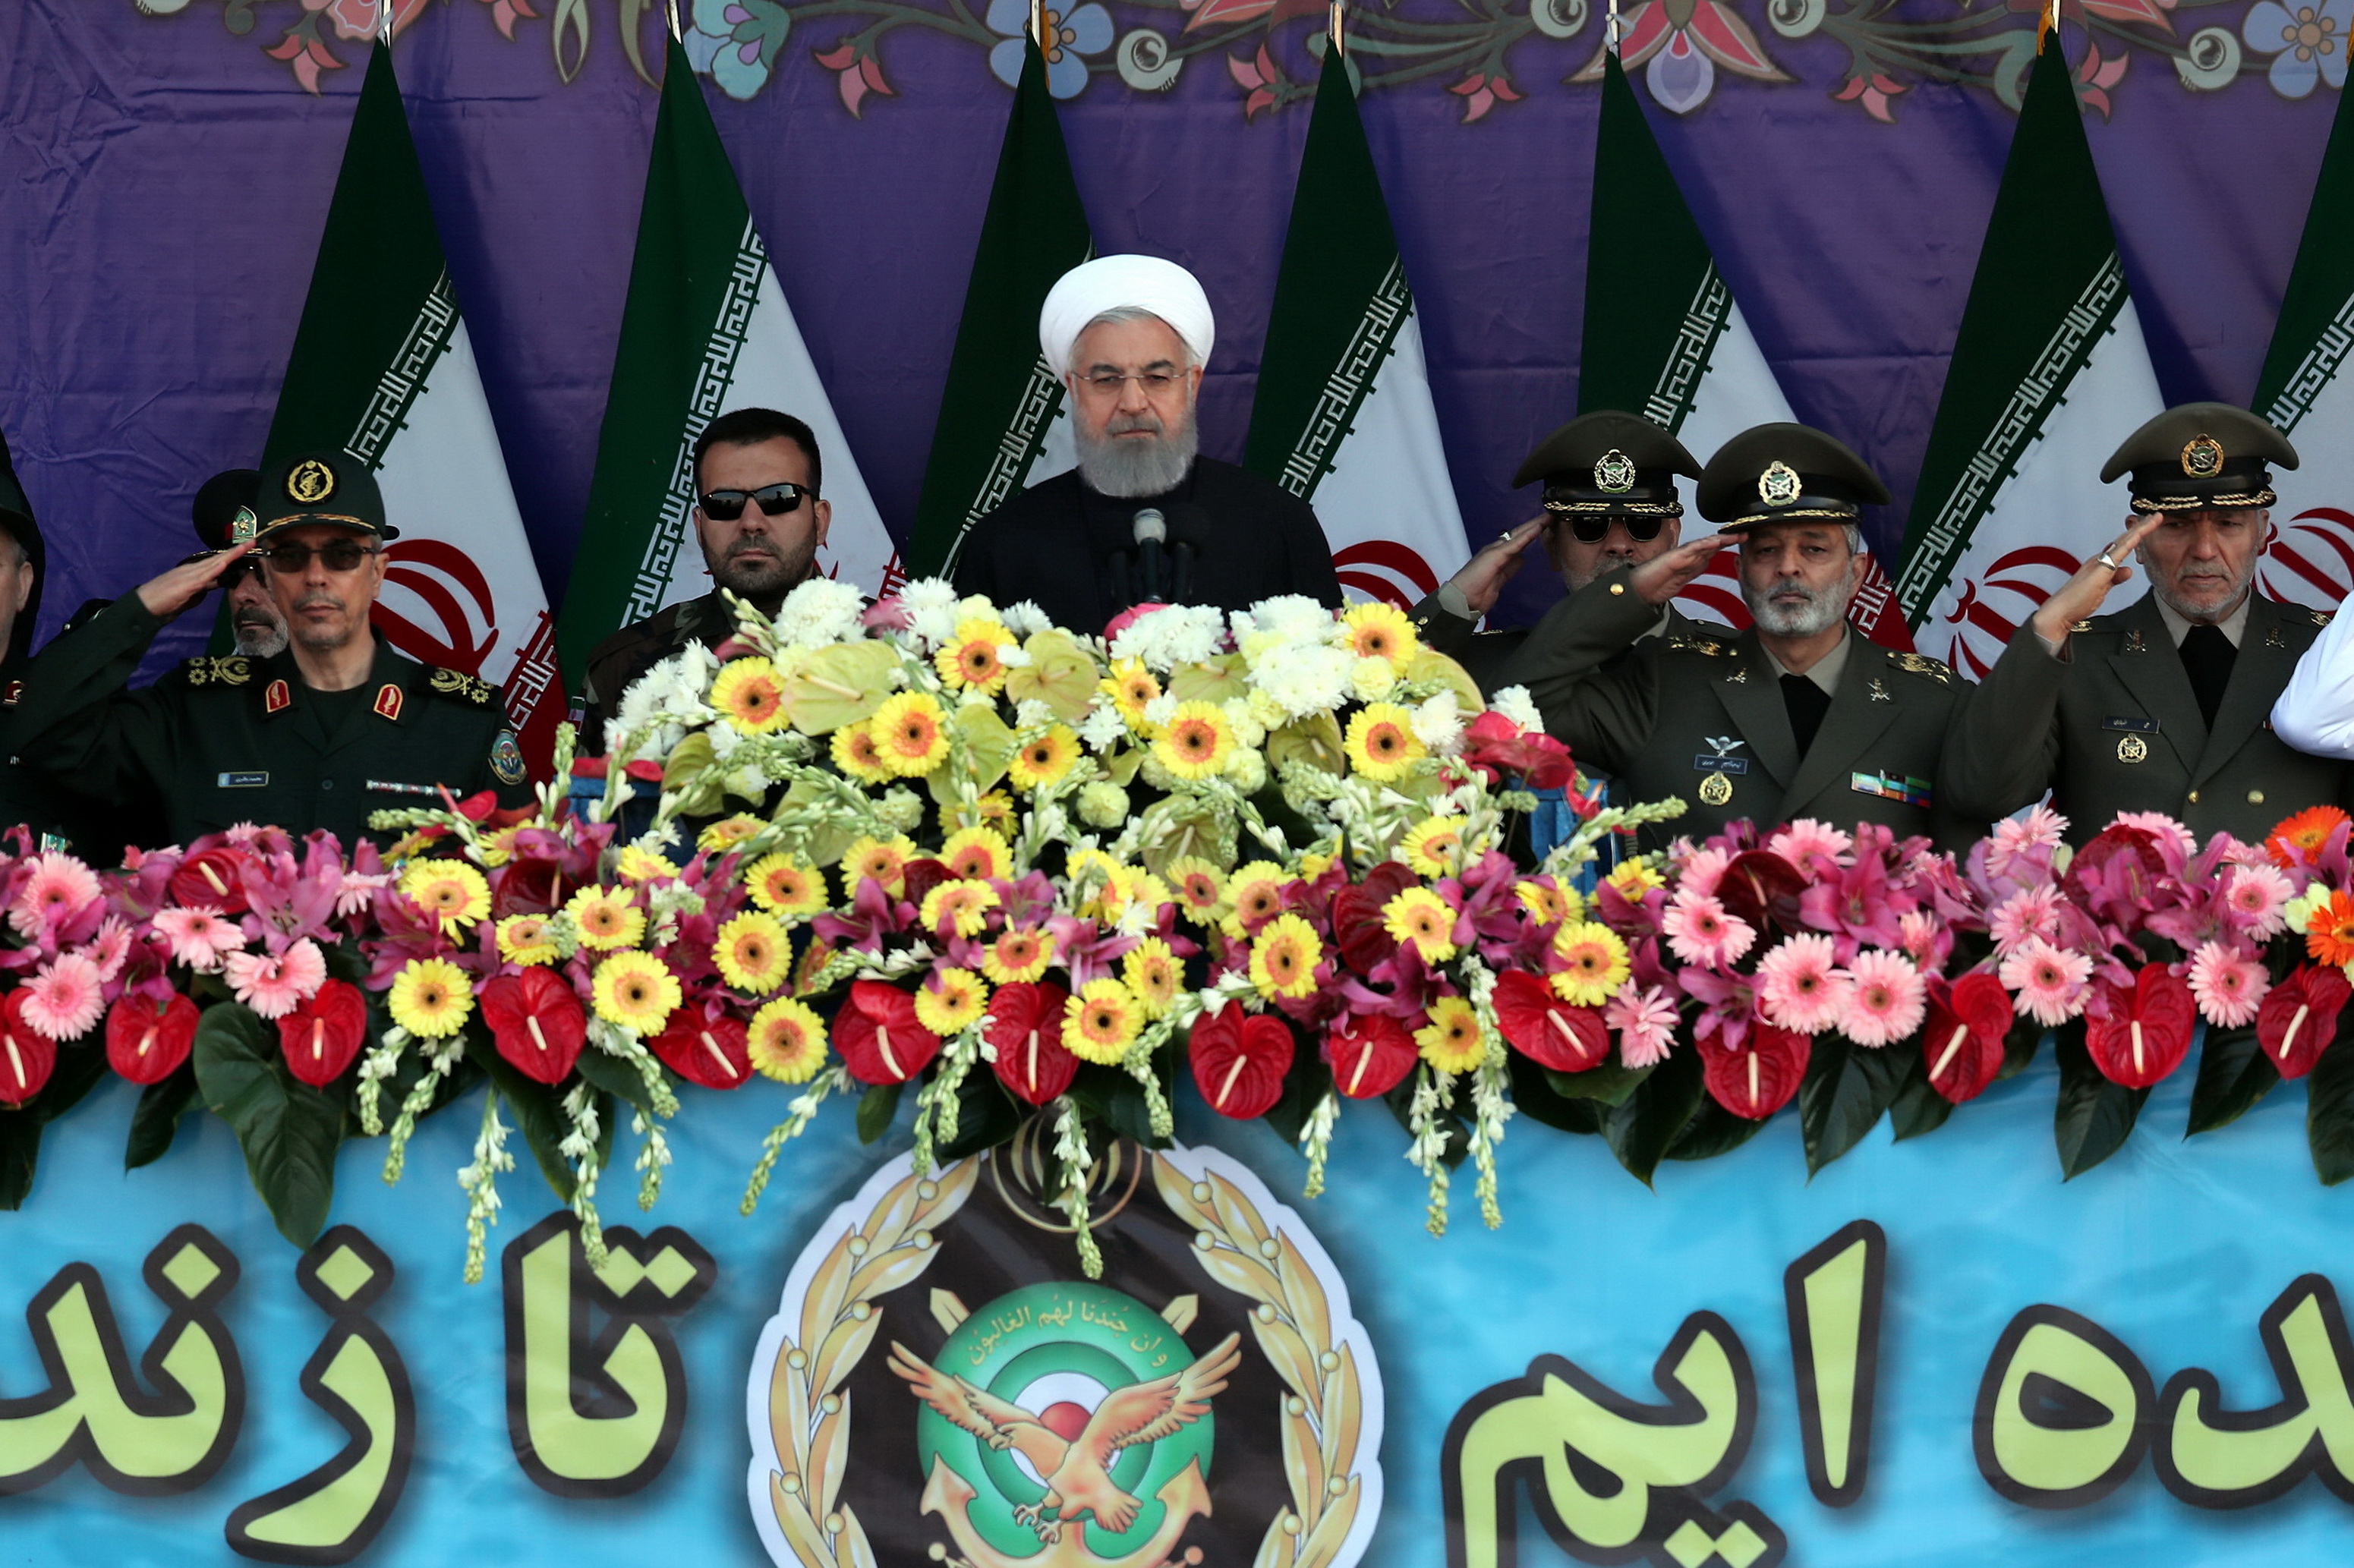 روحانی: برای قدرت دفاعی توجهی به نظر دیگران نداریم/ رویکرد ایران در منطقه، همسایگی خوب است